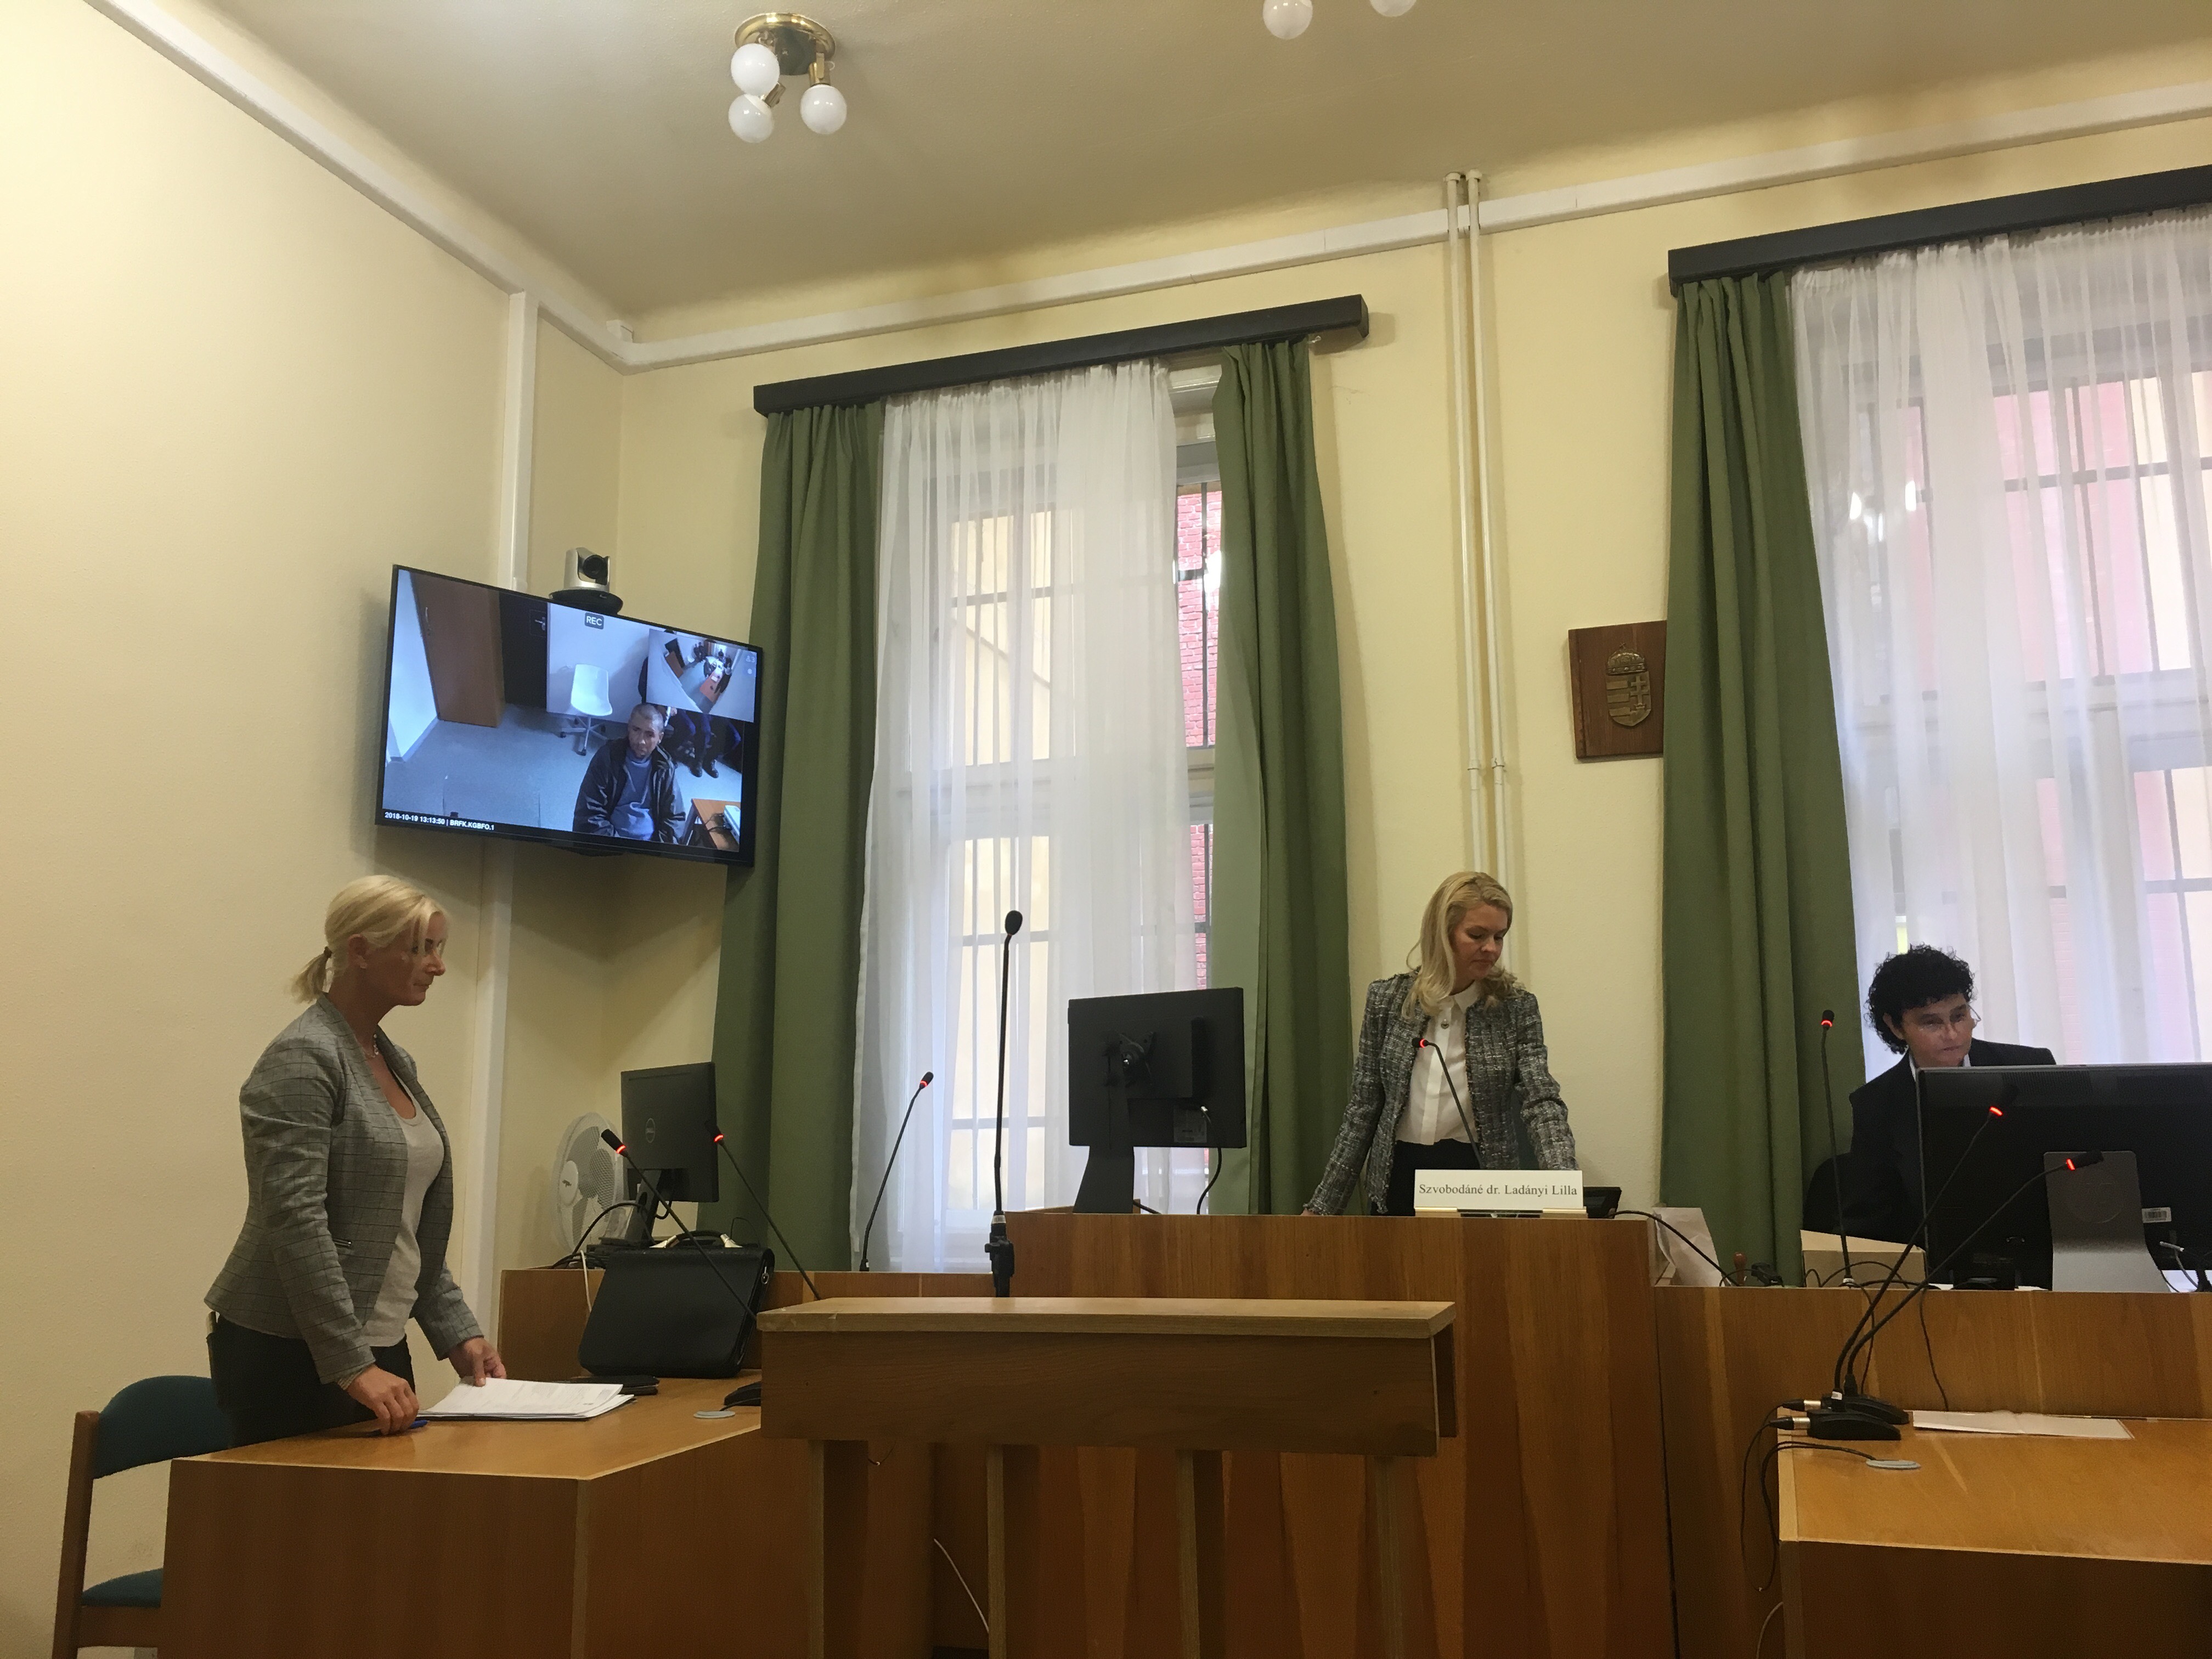 A Kaposvári Járásbíróság szerint az Alaptörvénybe ütközik az új hajléktalanellenes törvény